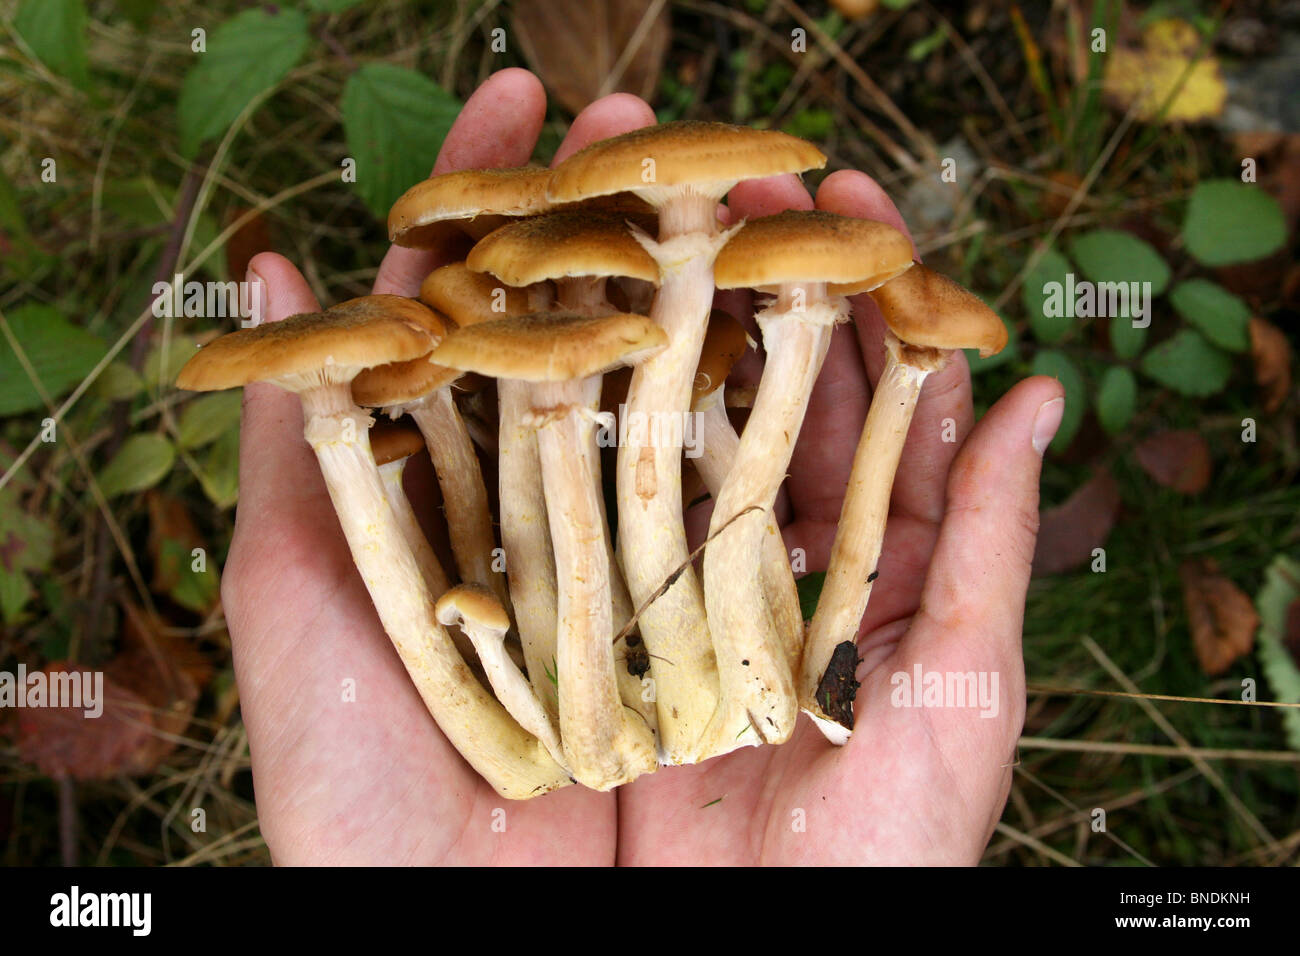 Les champignons agaric de miel dans les mains Banque D'Images